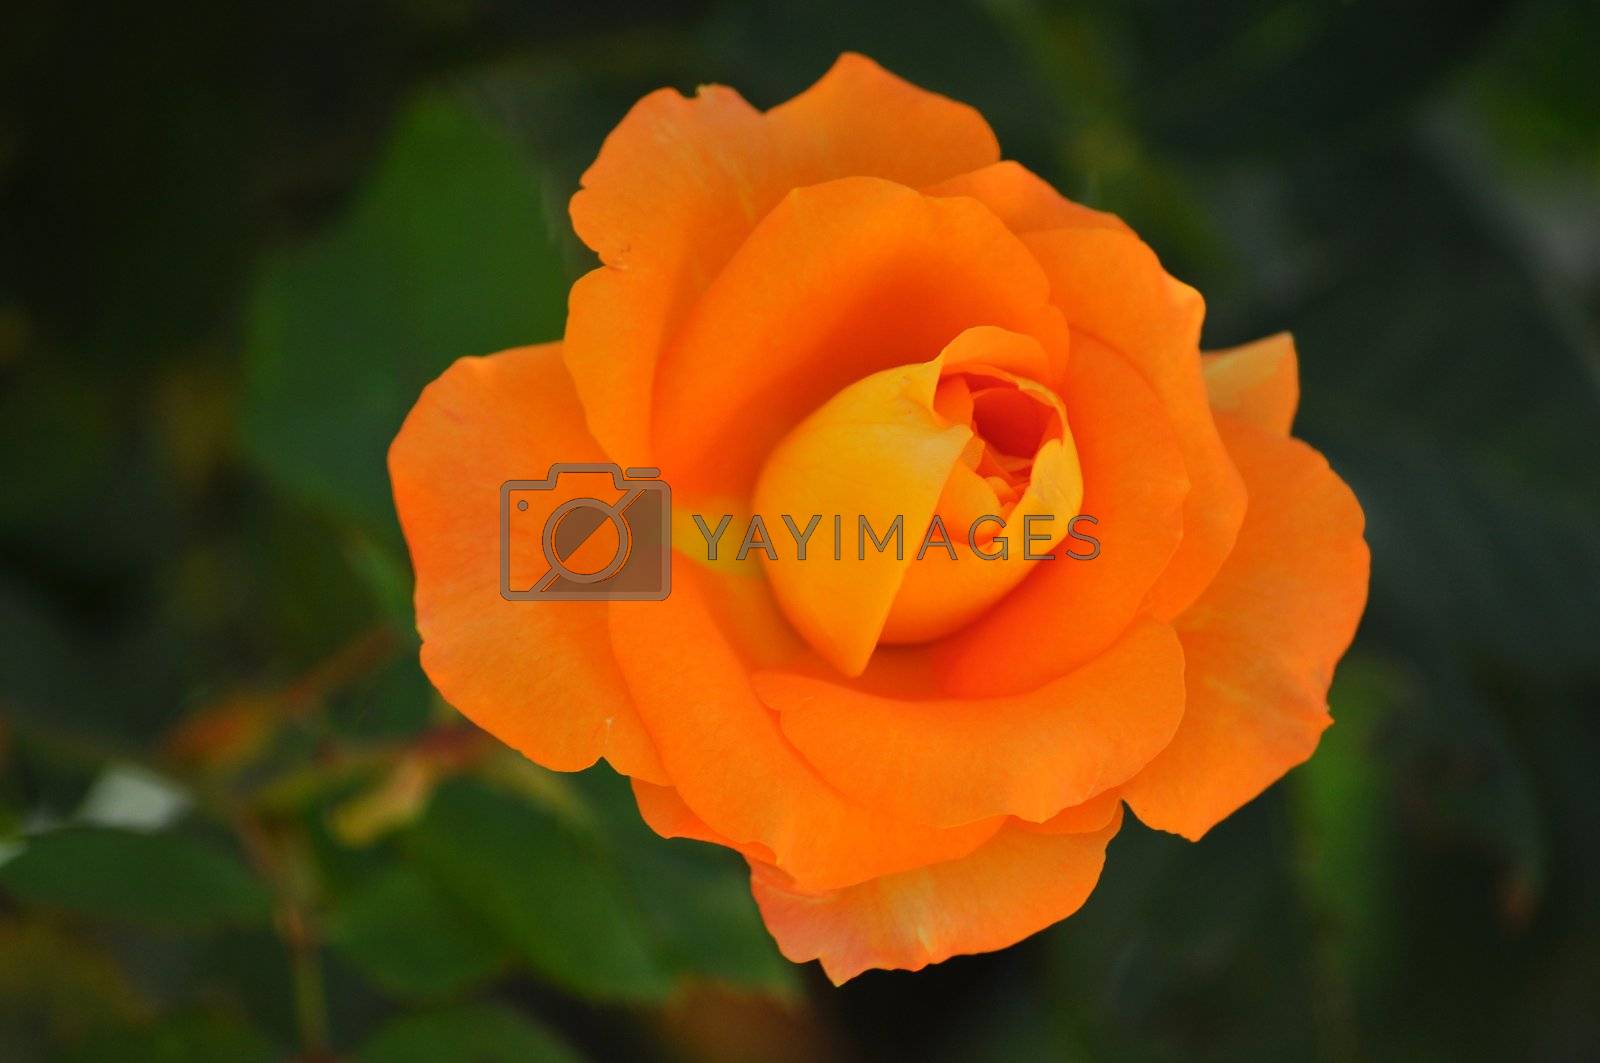 Royalty free image of orange rose by MaZiKab